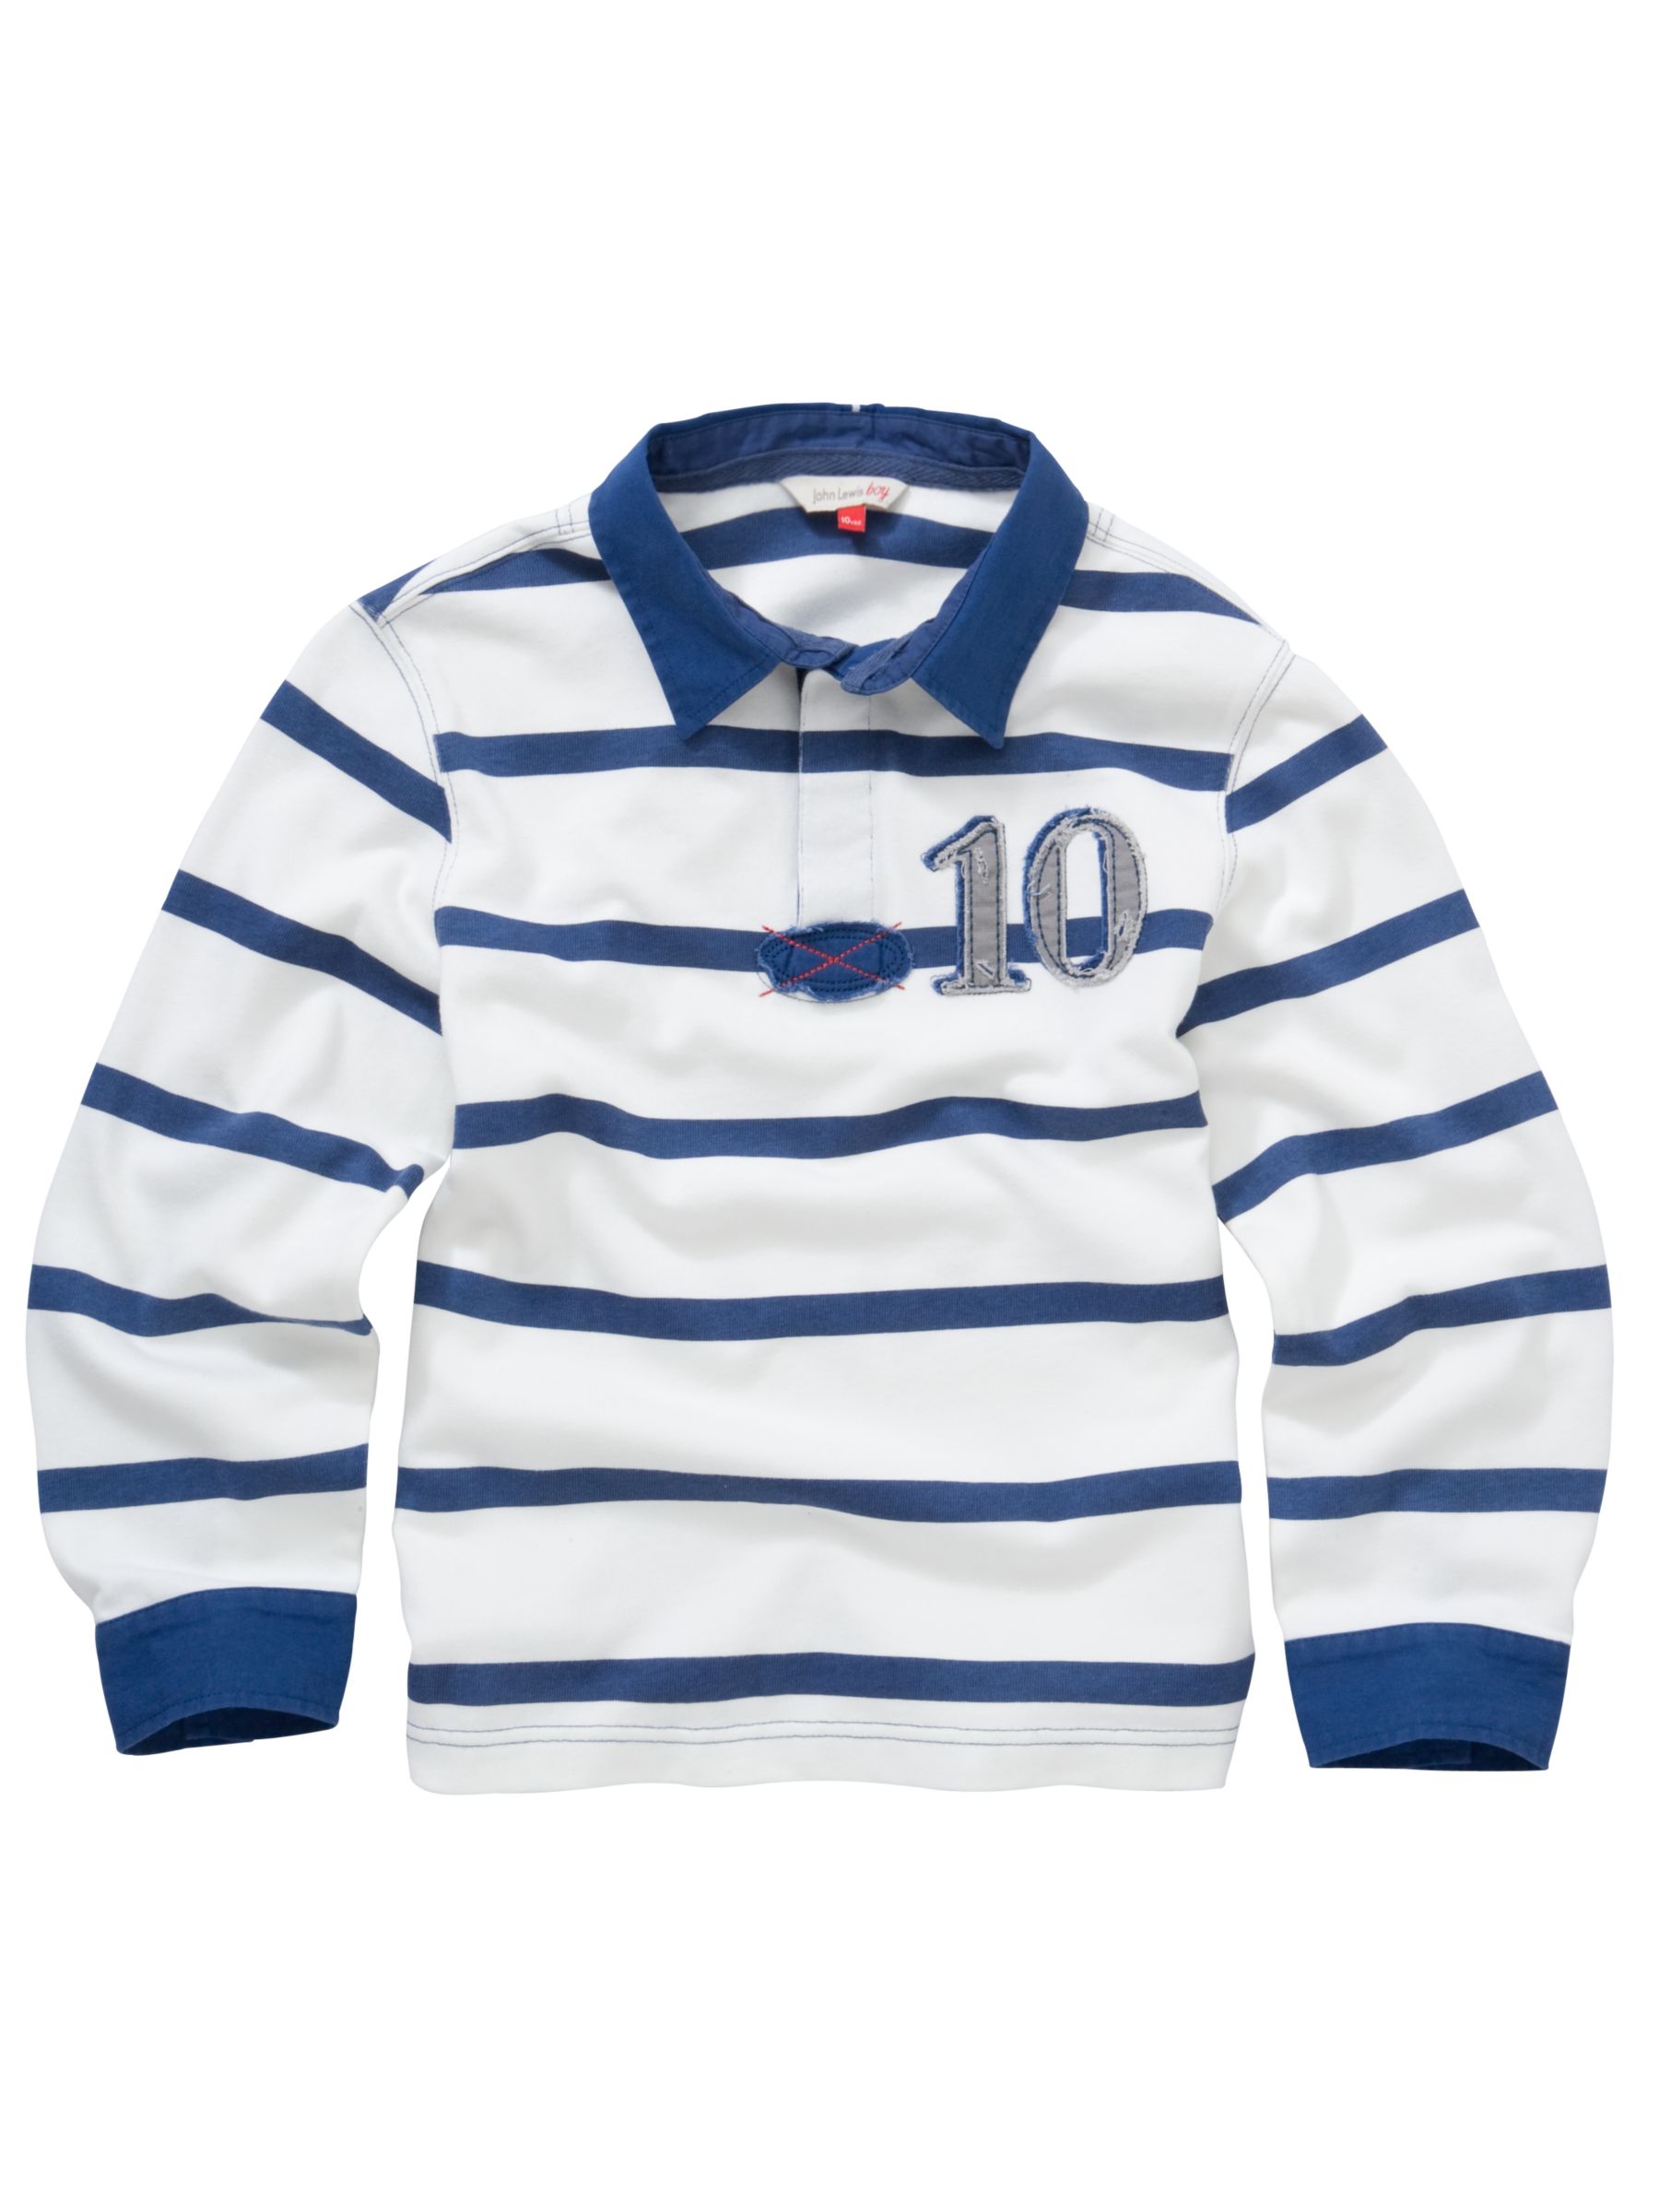 John Lewis Boy Stripe Rugby Shirt, White/navy, 3